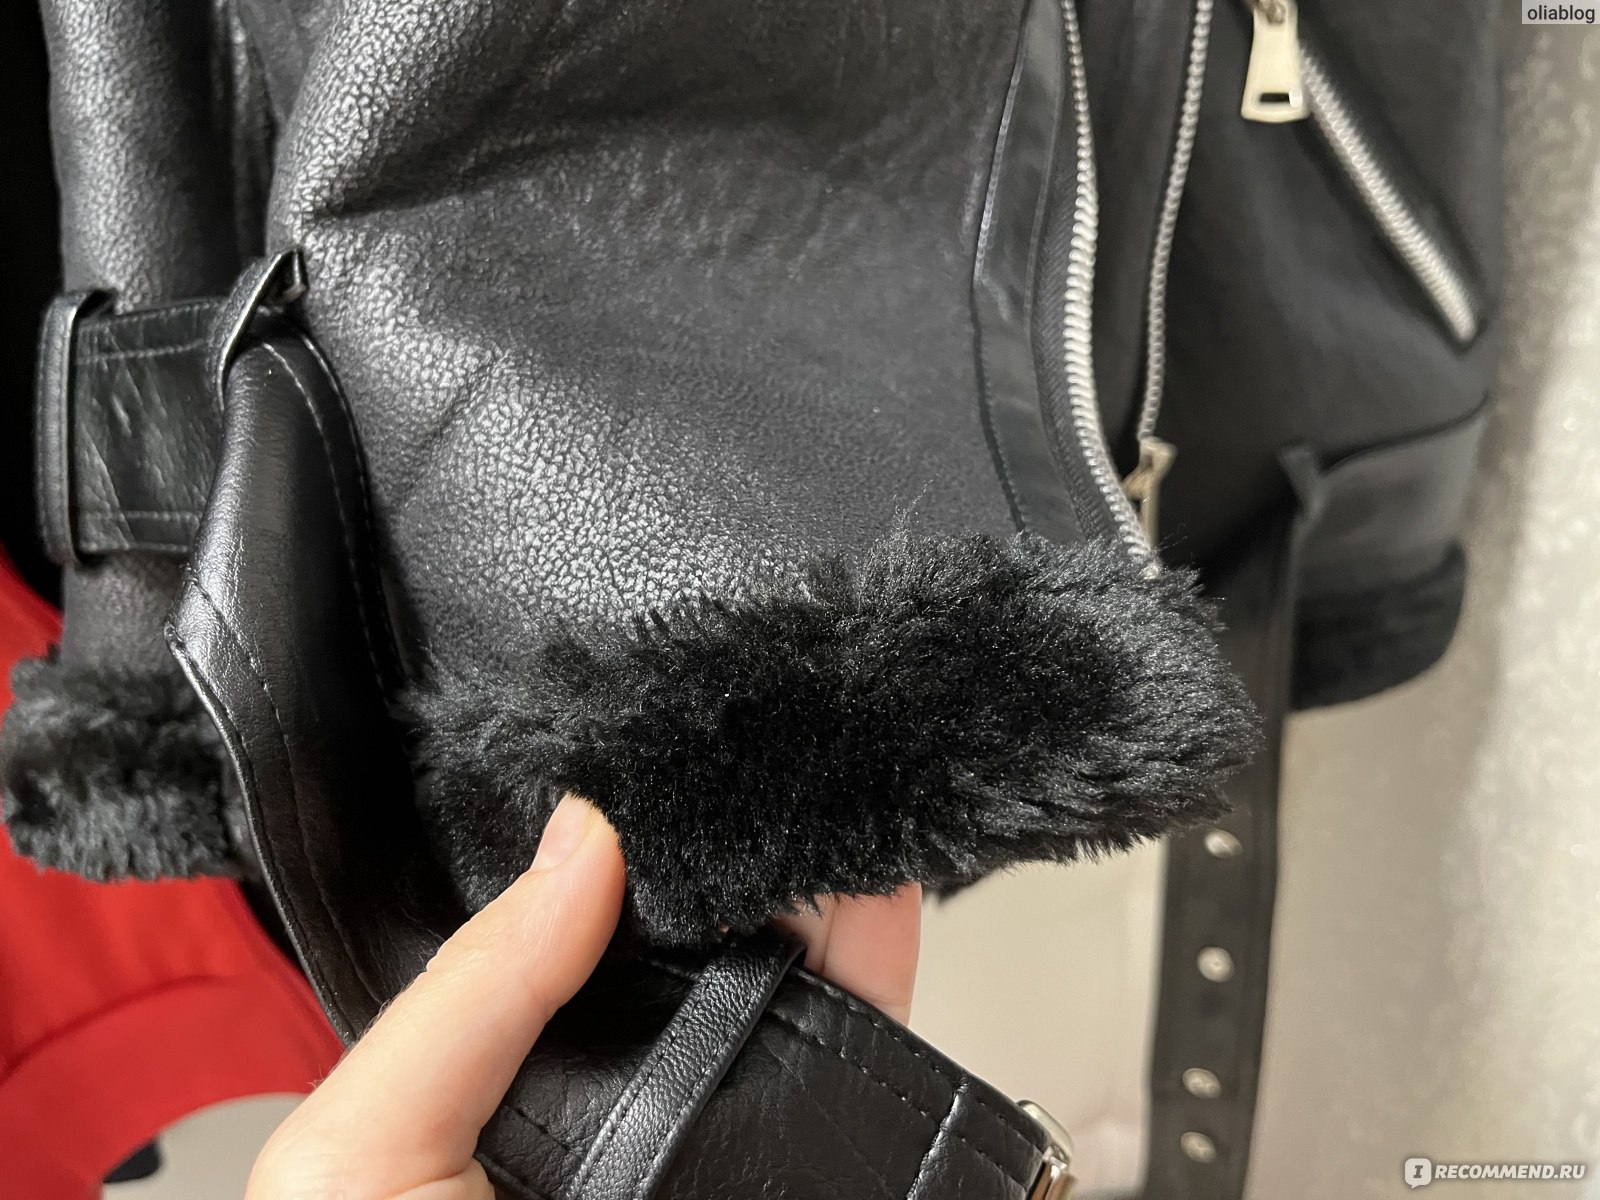 Дубленка AliExpress Garaouy 2022 New Women Winter Sheepskin Coat Thick Warm Faux Lamb Leather Jacket with Belt Loose Outerwear Streetwear фото